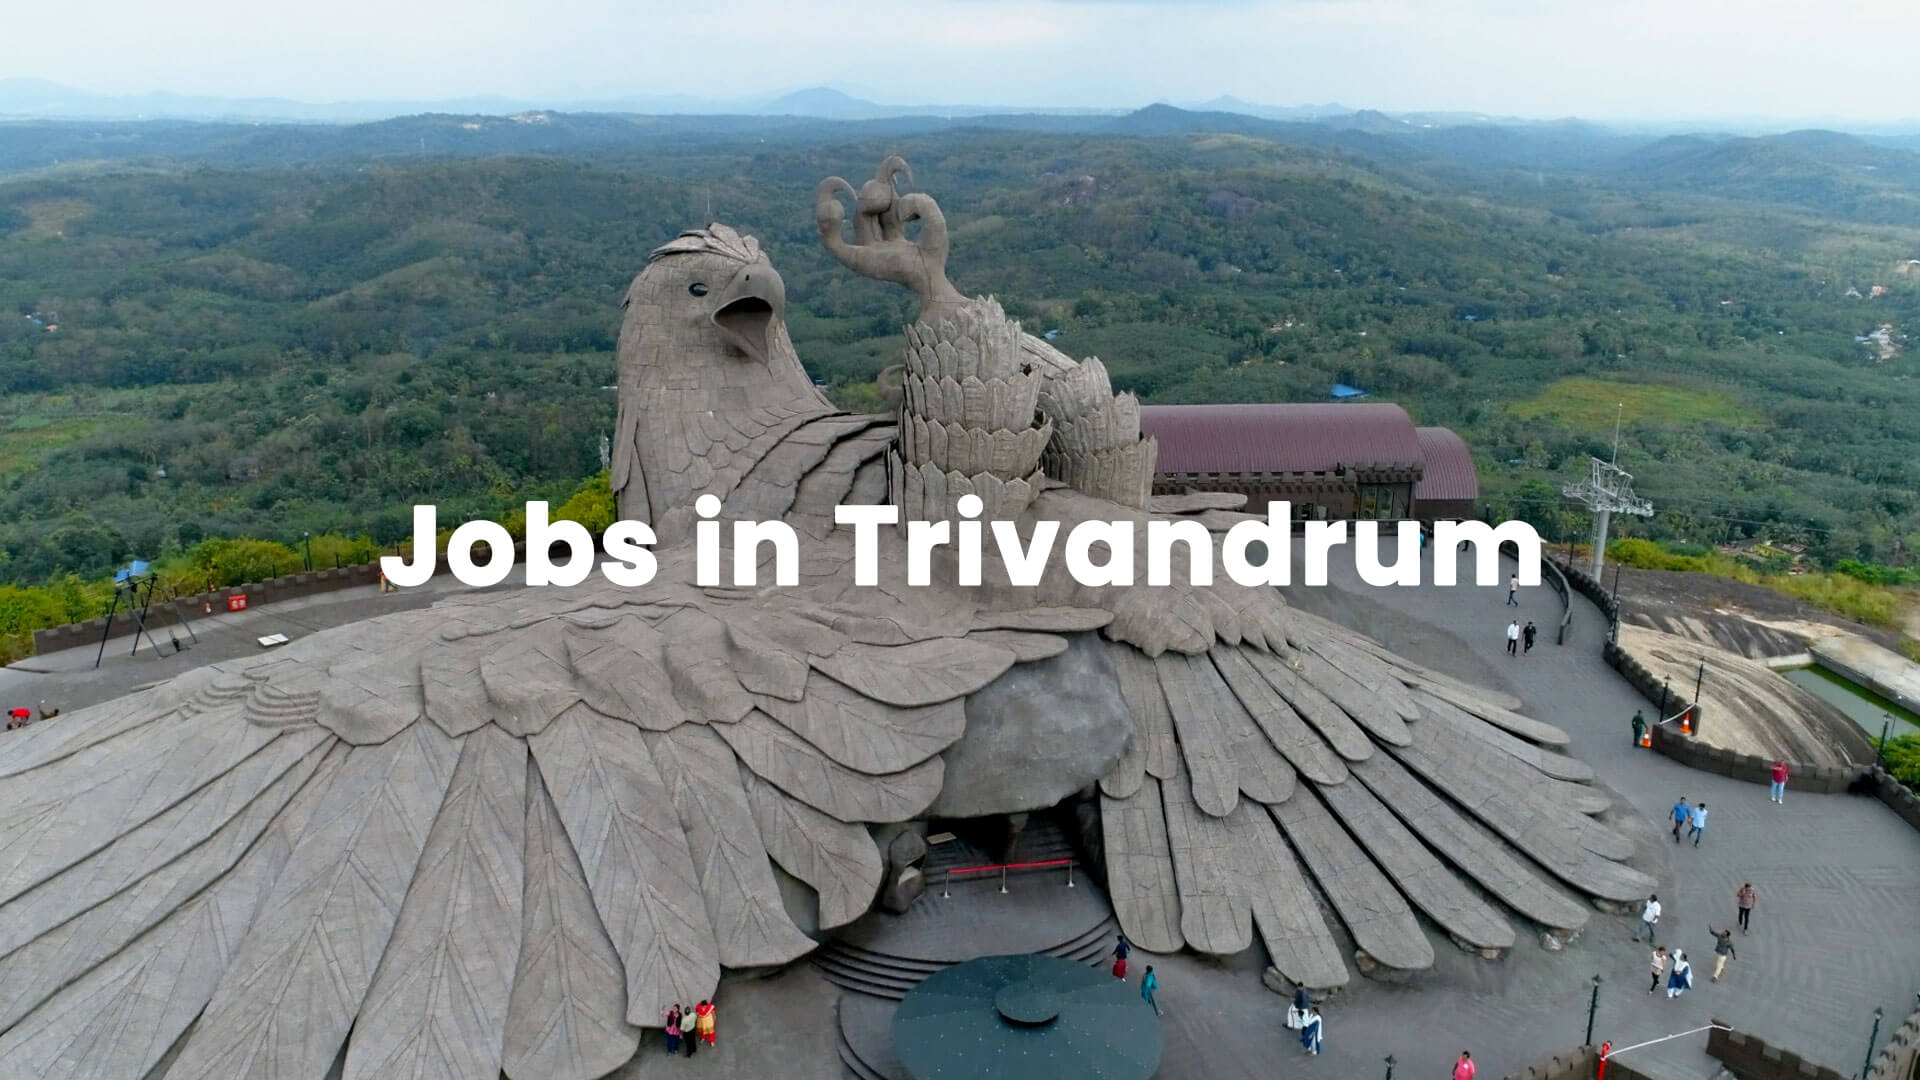 Jobs in Trivandrum